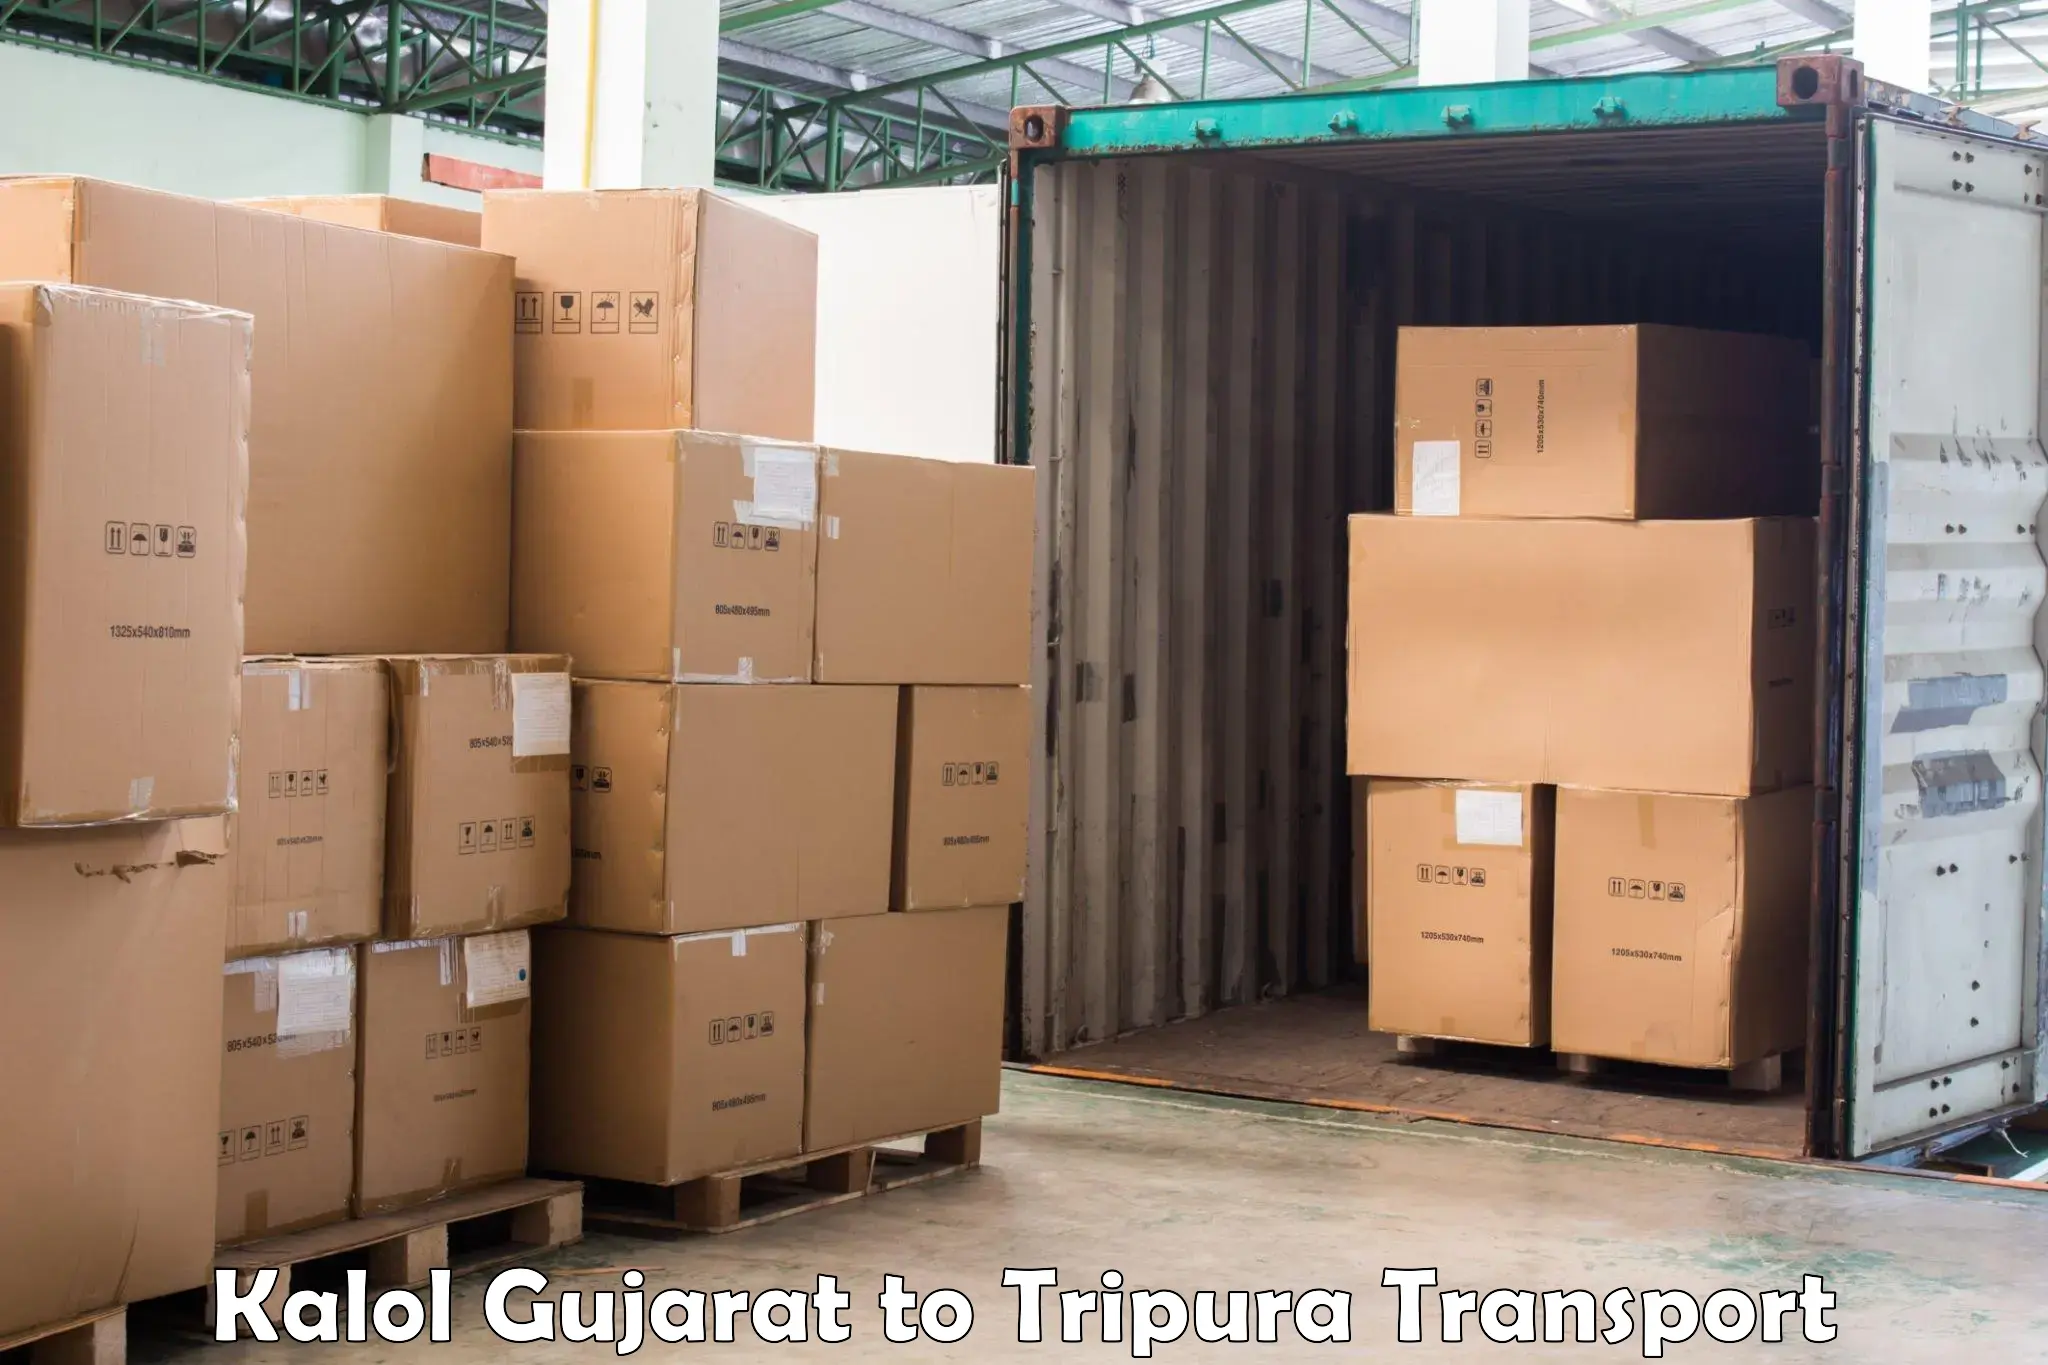 Furniture transport service Kalol Gujarat to Udaipur Tripura